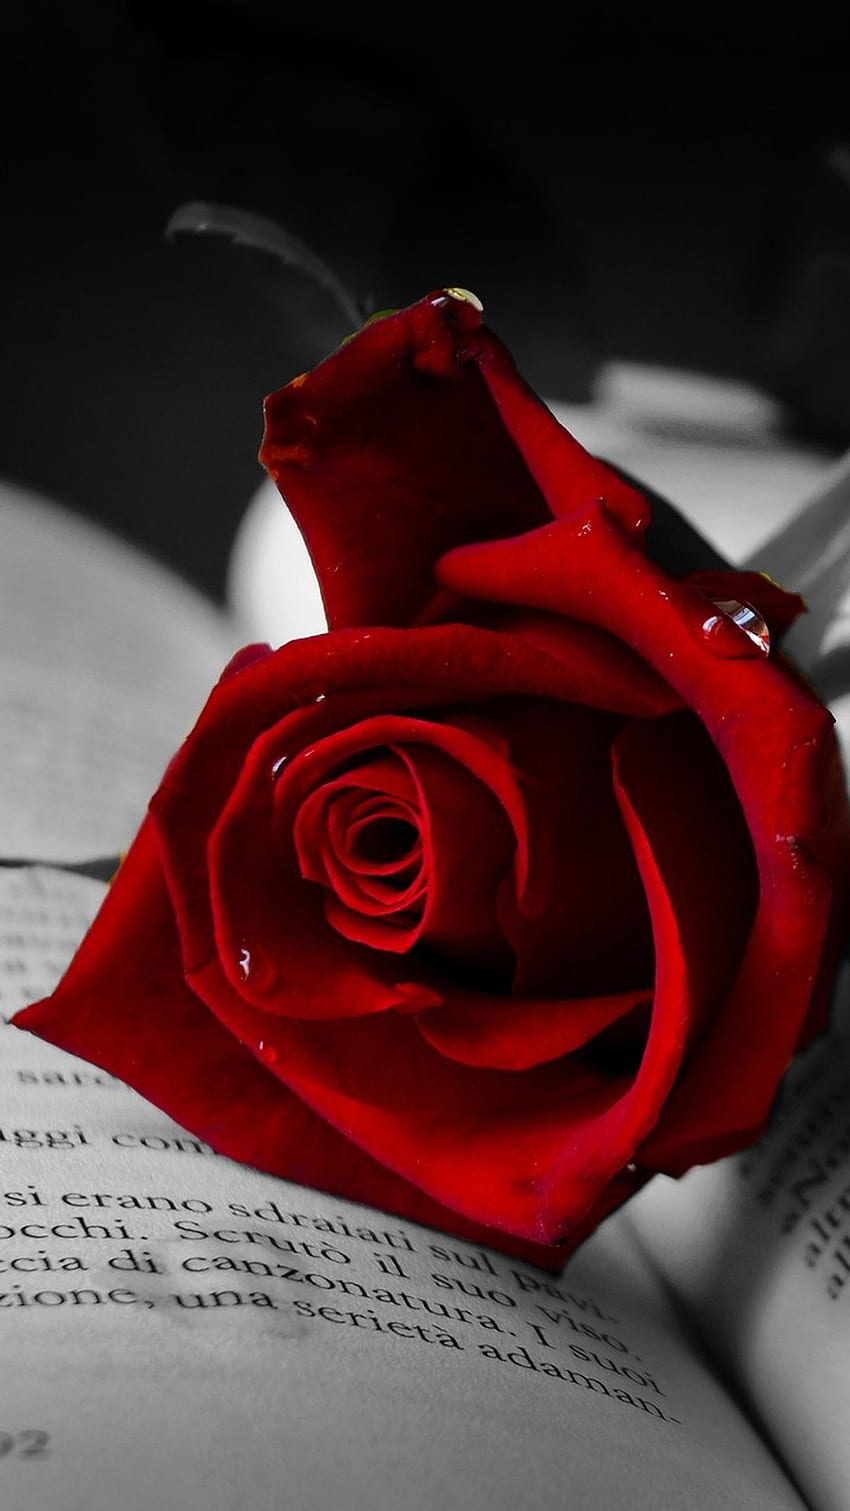 Hoa hồng đỏ là biểu tượng của tình yêu và sự đam mê. Hãy chiêm ngưỡng vẻ đẹp quyến rũ của hoa hồng đỏ trong hình ảnh này.